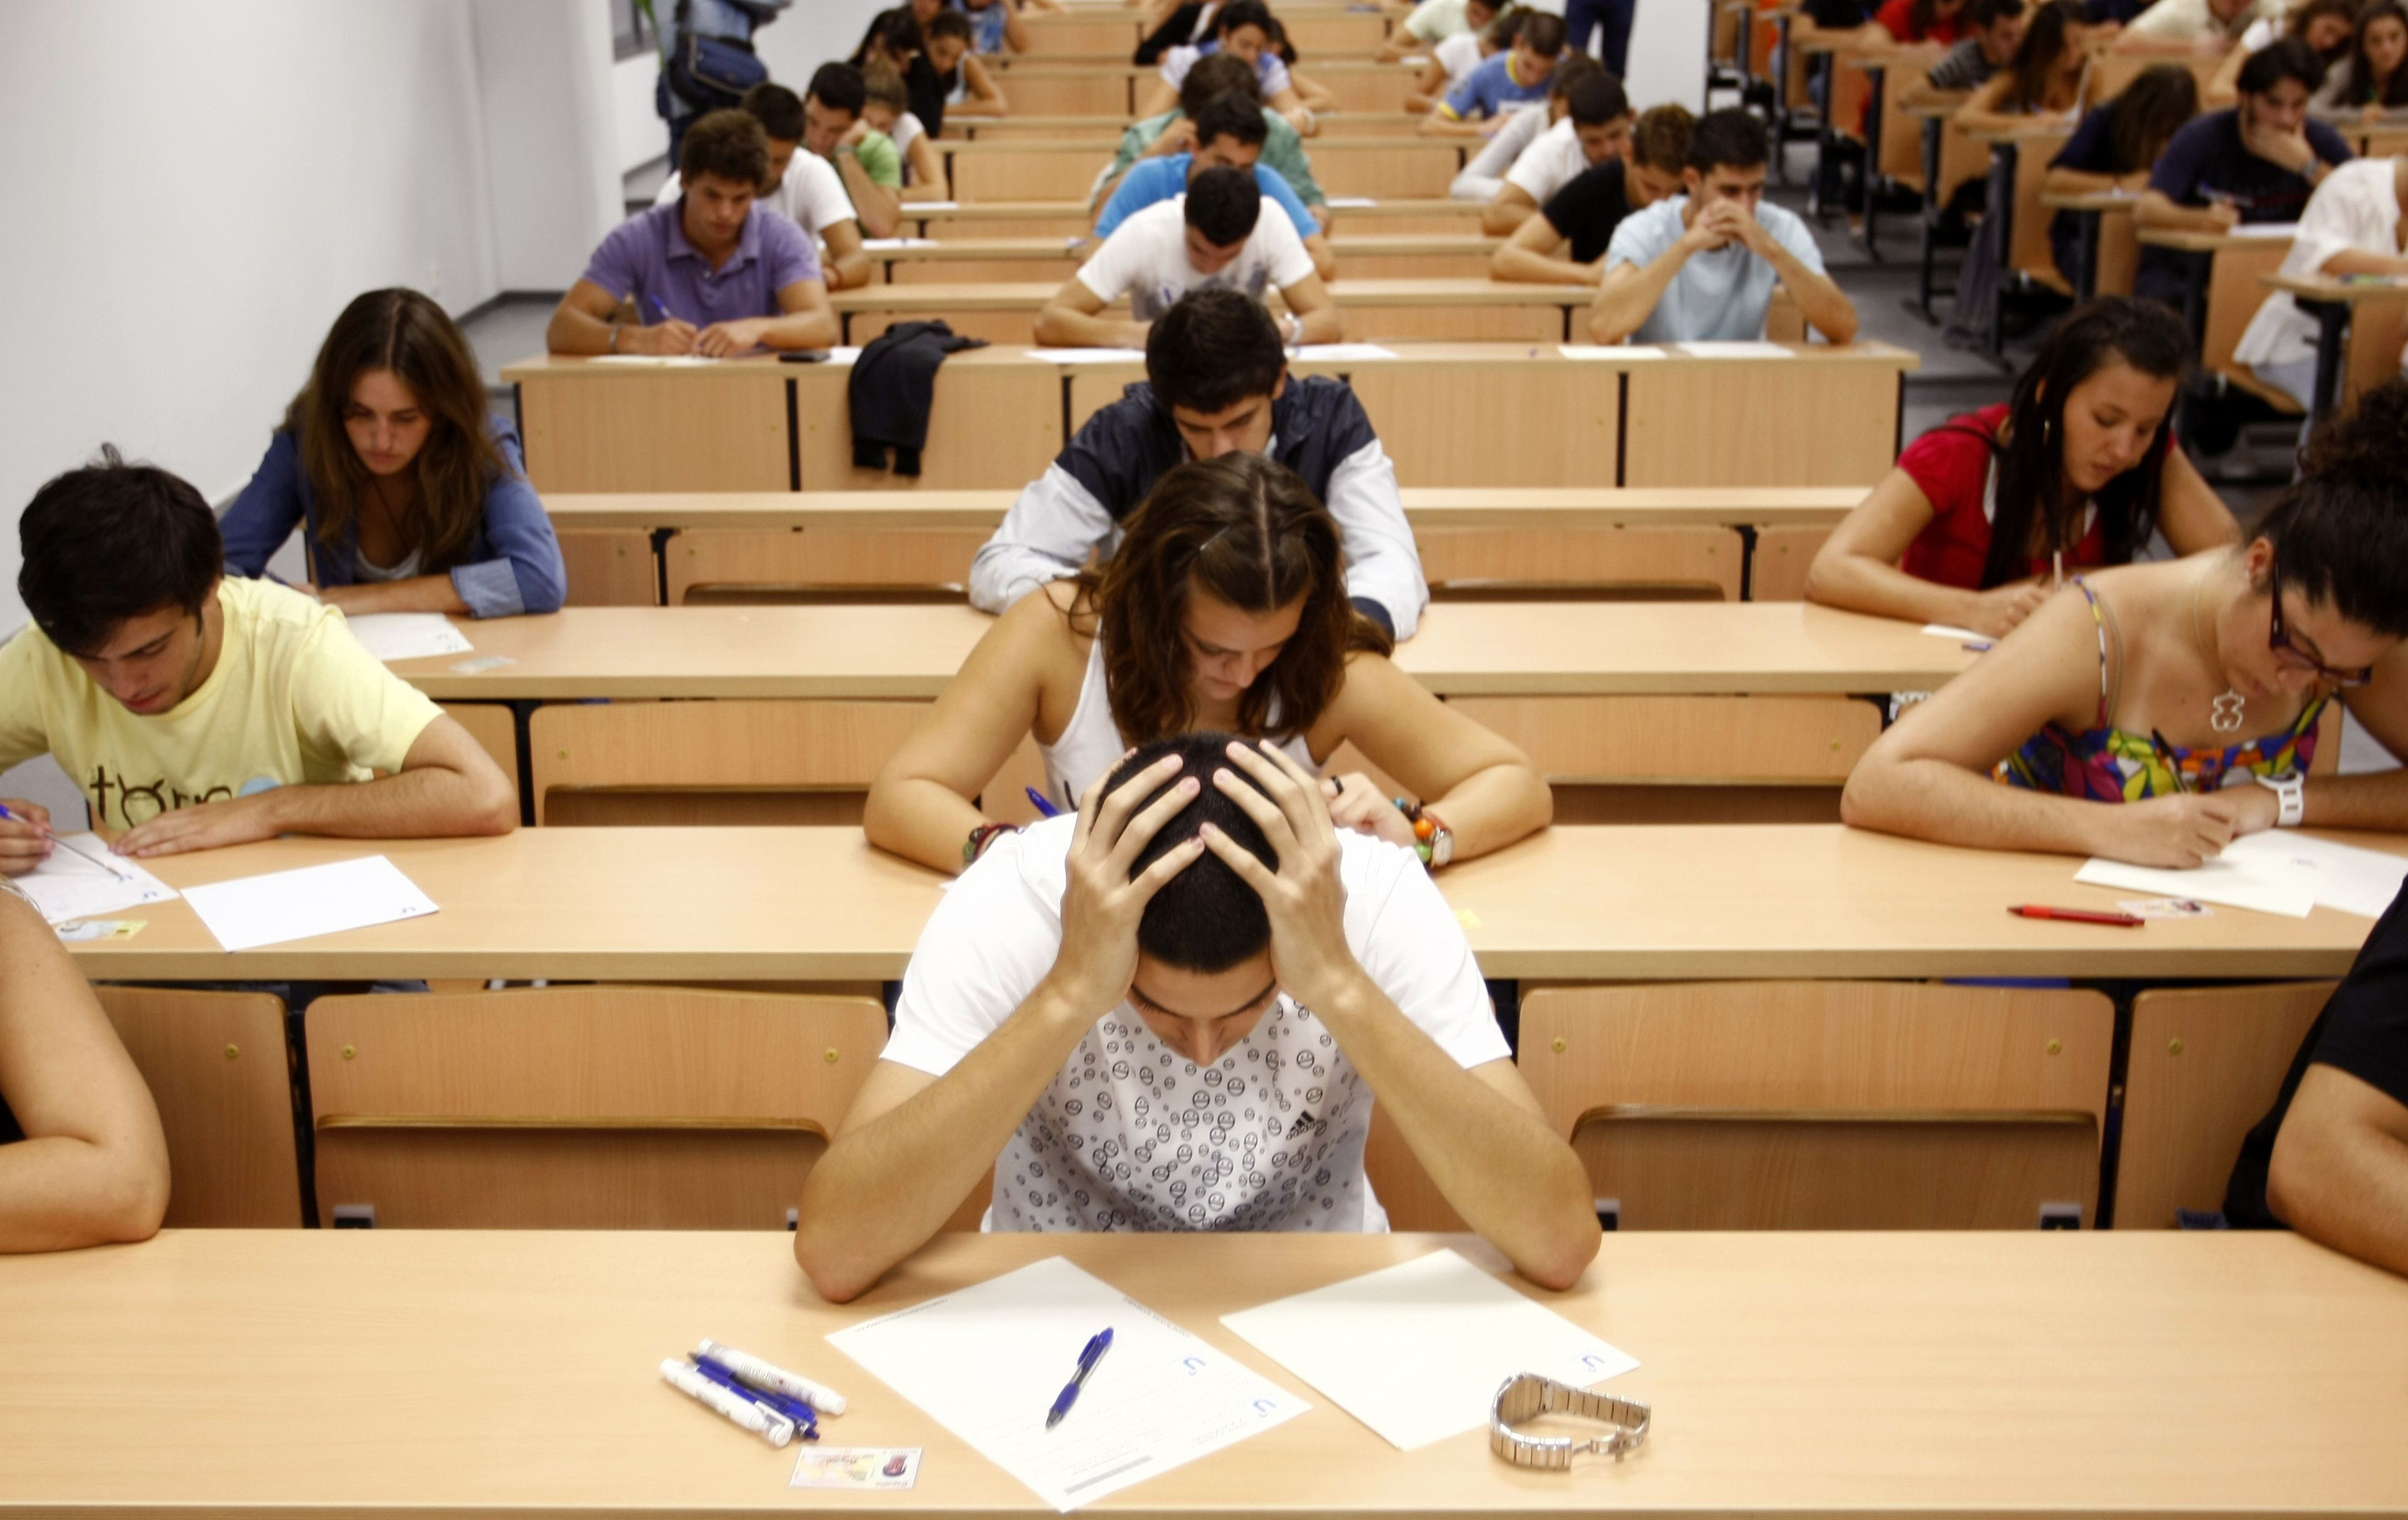 Estudiantes haciendo un examen